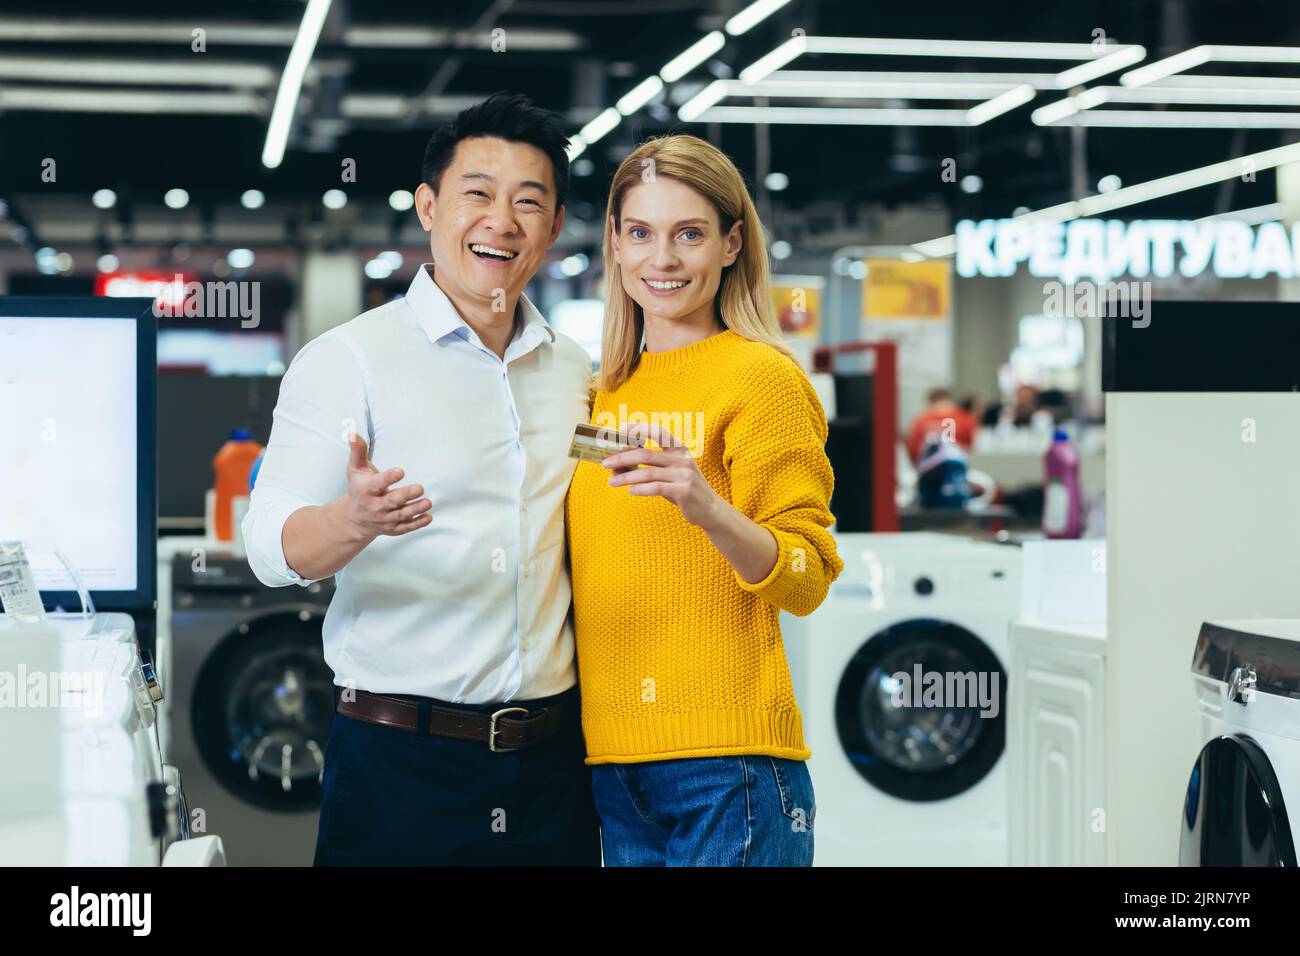 Portrait d'un couple asiatique varié, homme et femme, faisant du shopping dans un supermarché, de l'électronique et des appareils électroménagers, regardant l'appareil photo et souriant, satisfait de la carte de crédit bancaire Banque D'Images